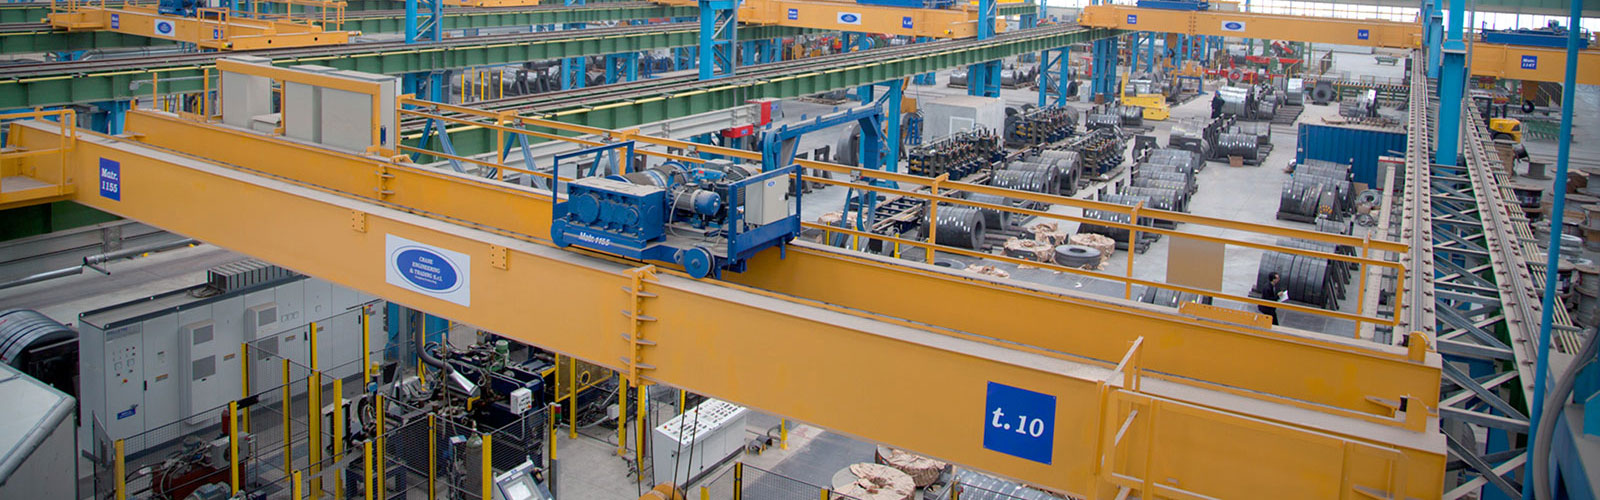 Crane Engineering : attrezzature amovibili di presa del carico